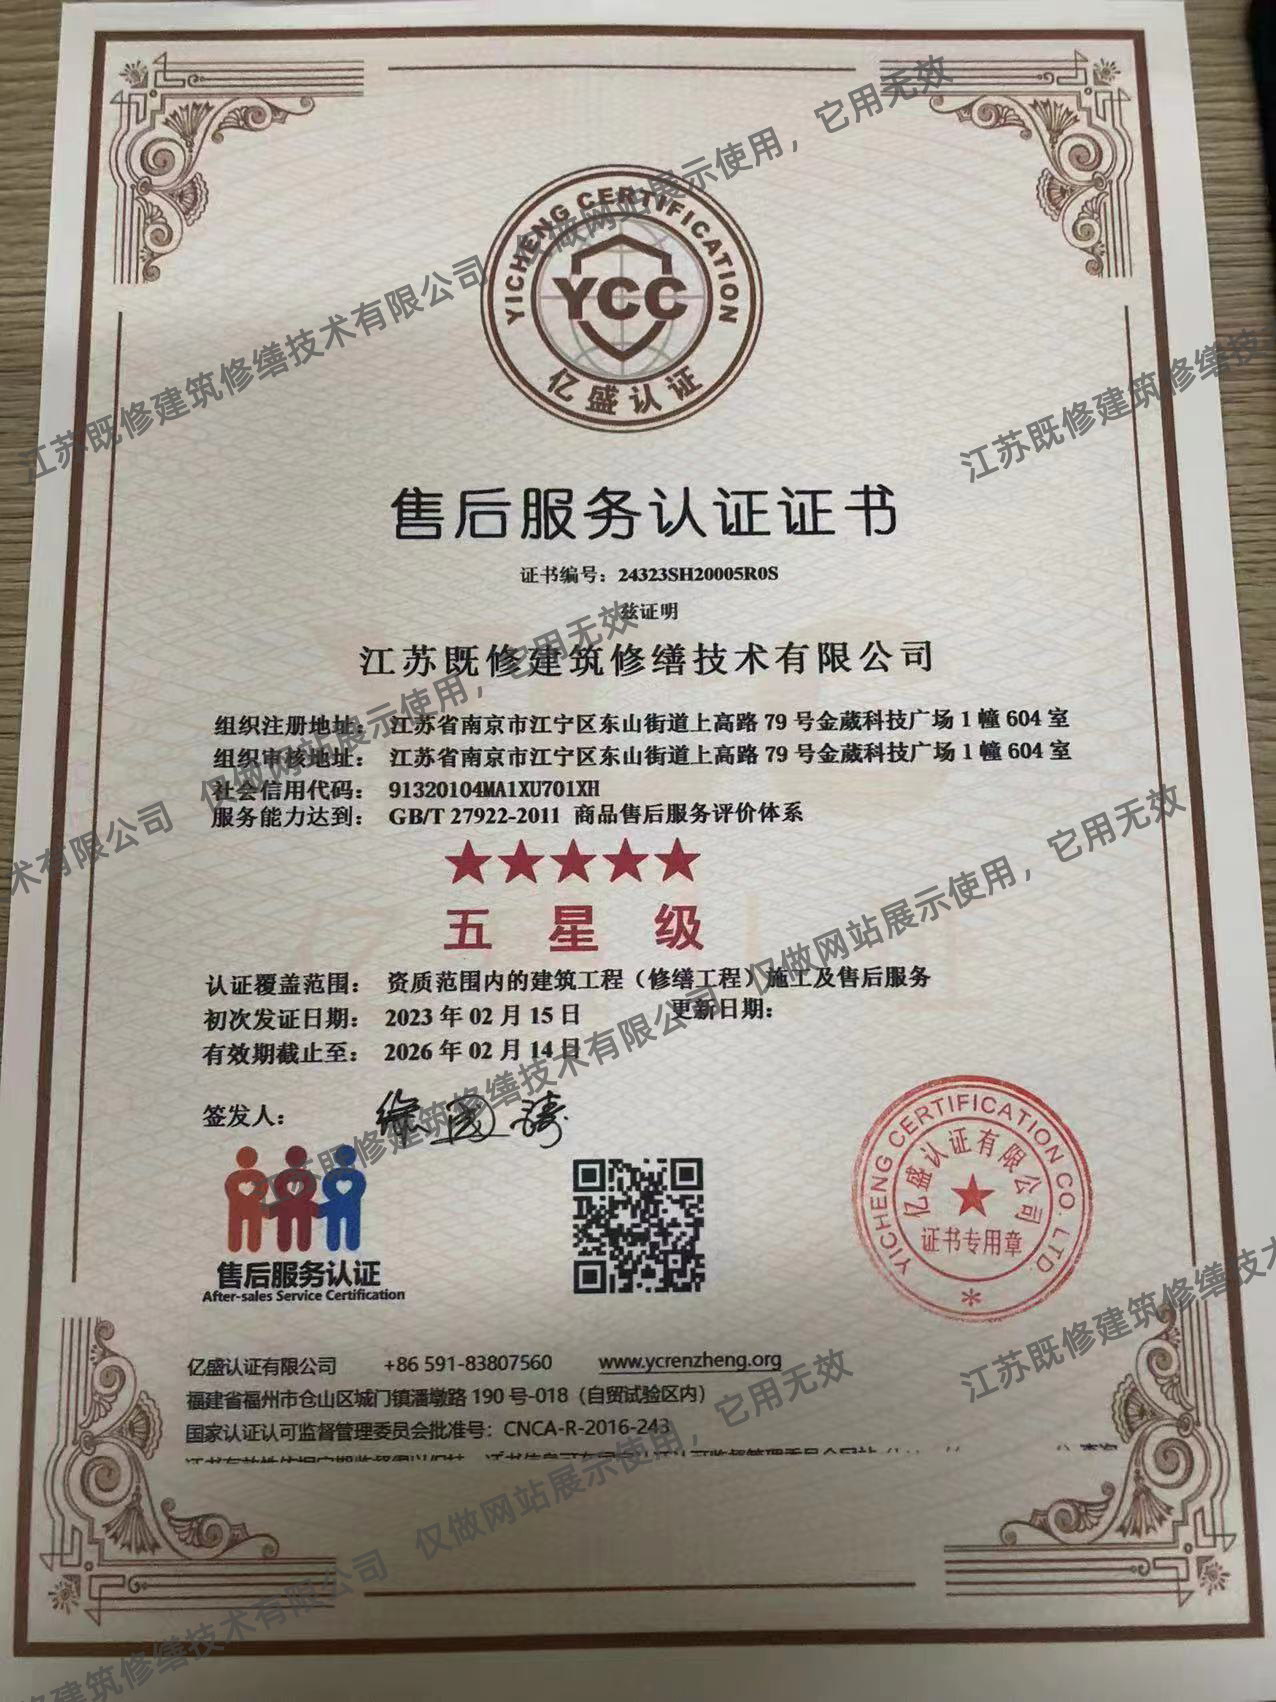 上海商品售后服务评价体系认证